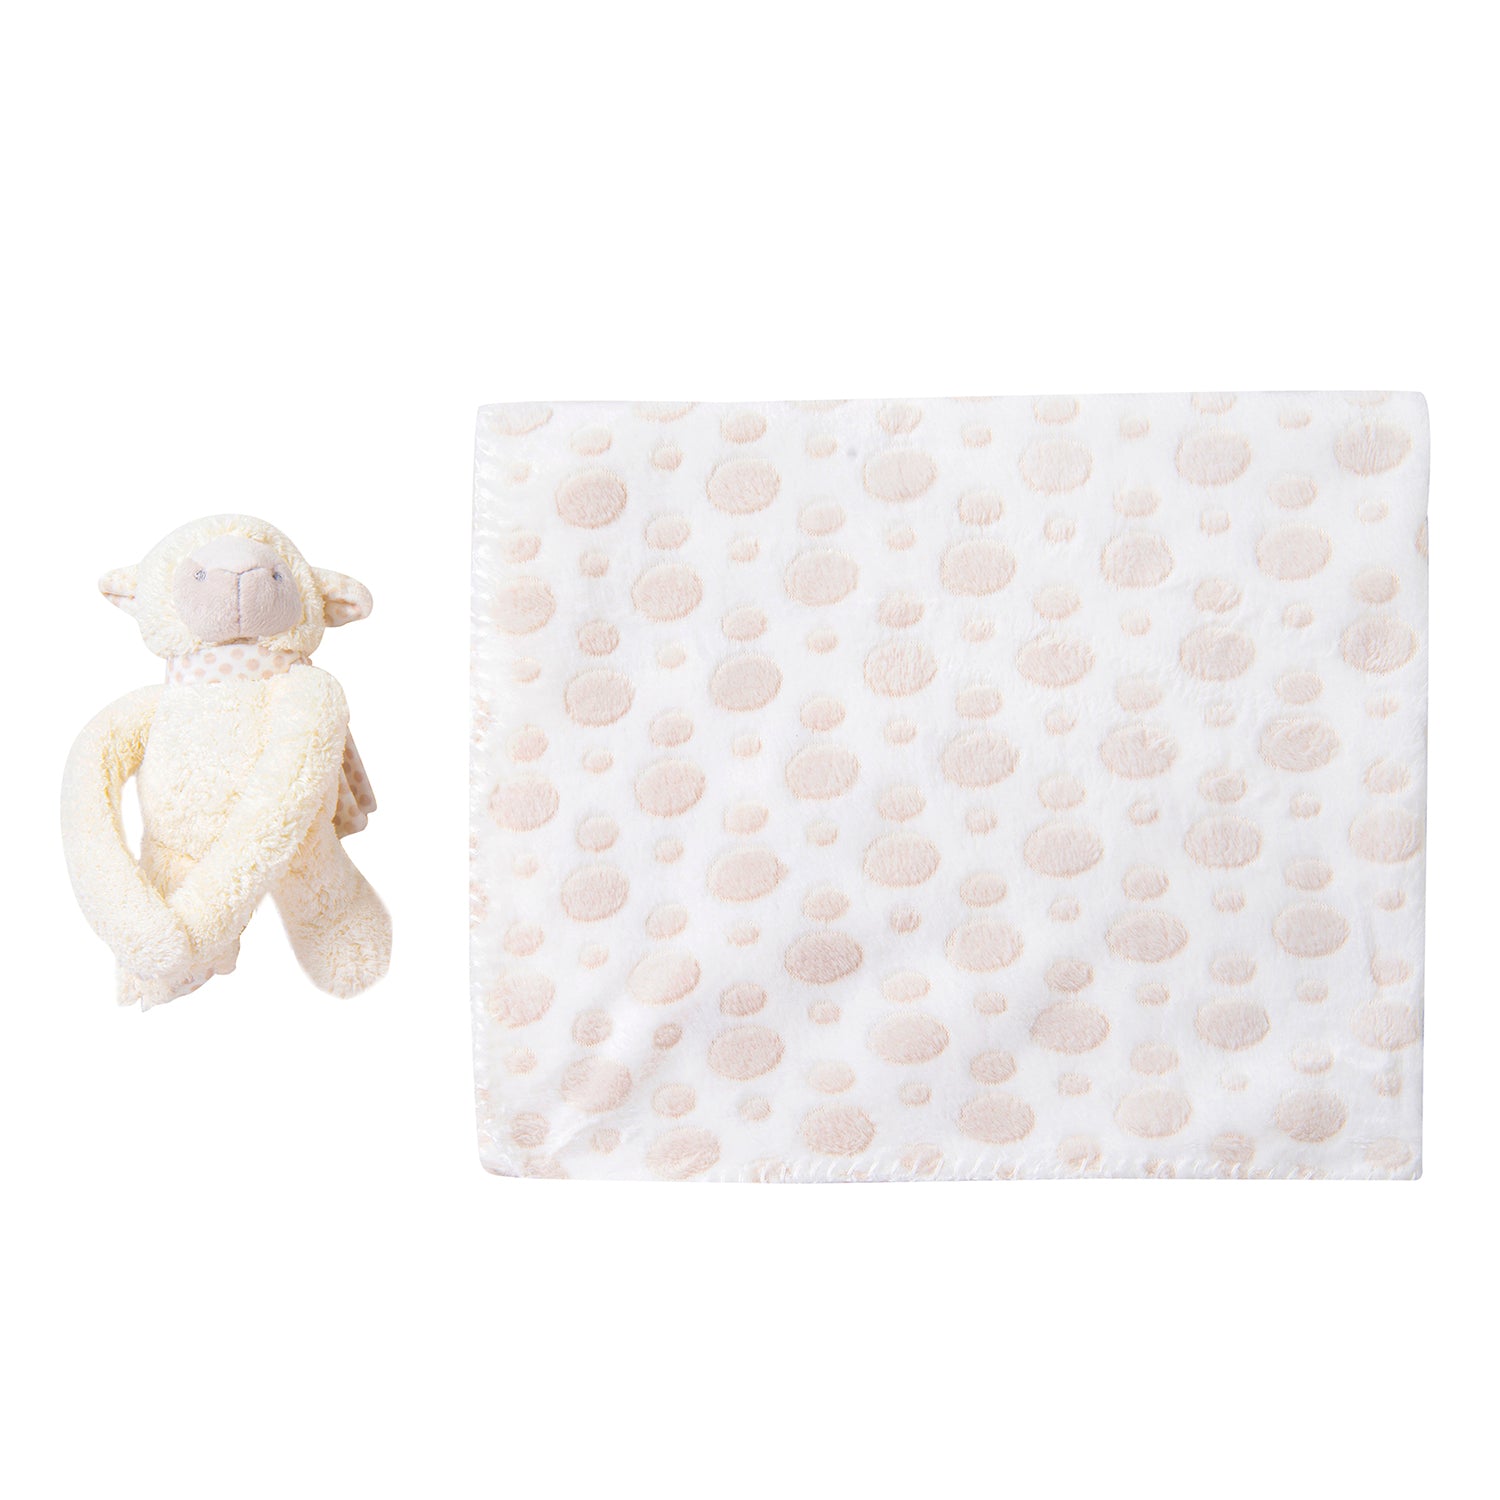 Monkey Soft Cozy Plush Toy Blanket Peach - Baby Moo